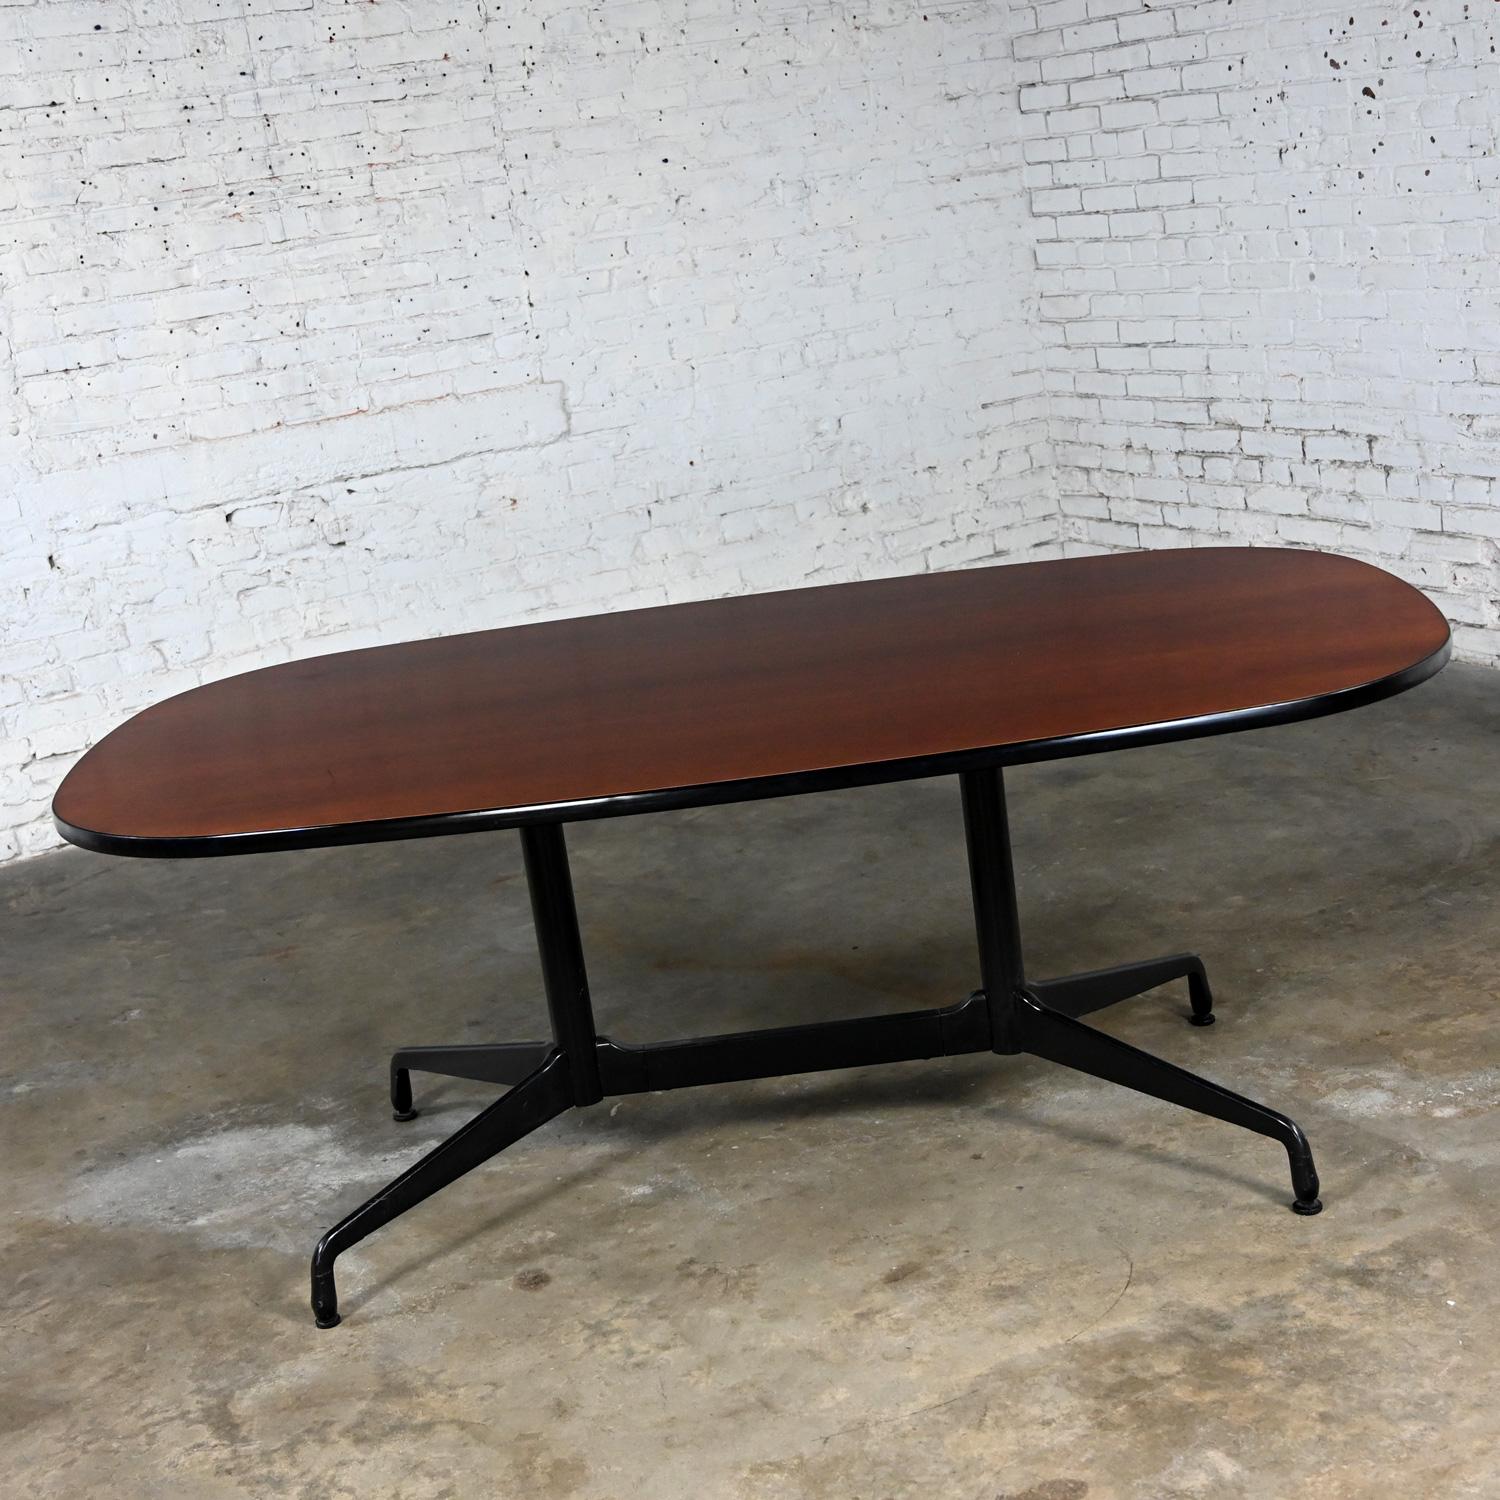 Fabuleuse table de conférence ou de salle à manger ovale vintage MCM (Mid-Century Modern) Eames pour Herman Miller racetrack avec une base segmentée universelle noire et un plateau en placage de bois de cerisier avec une bande de bord en vinyle